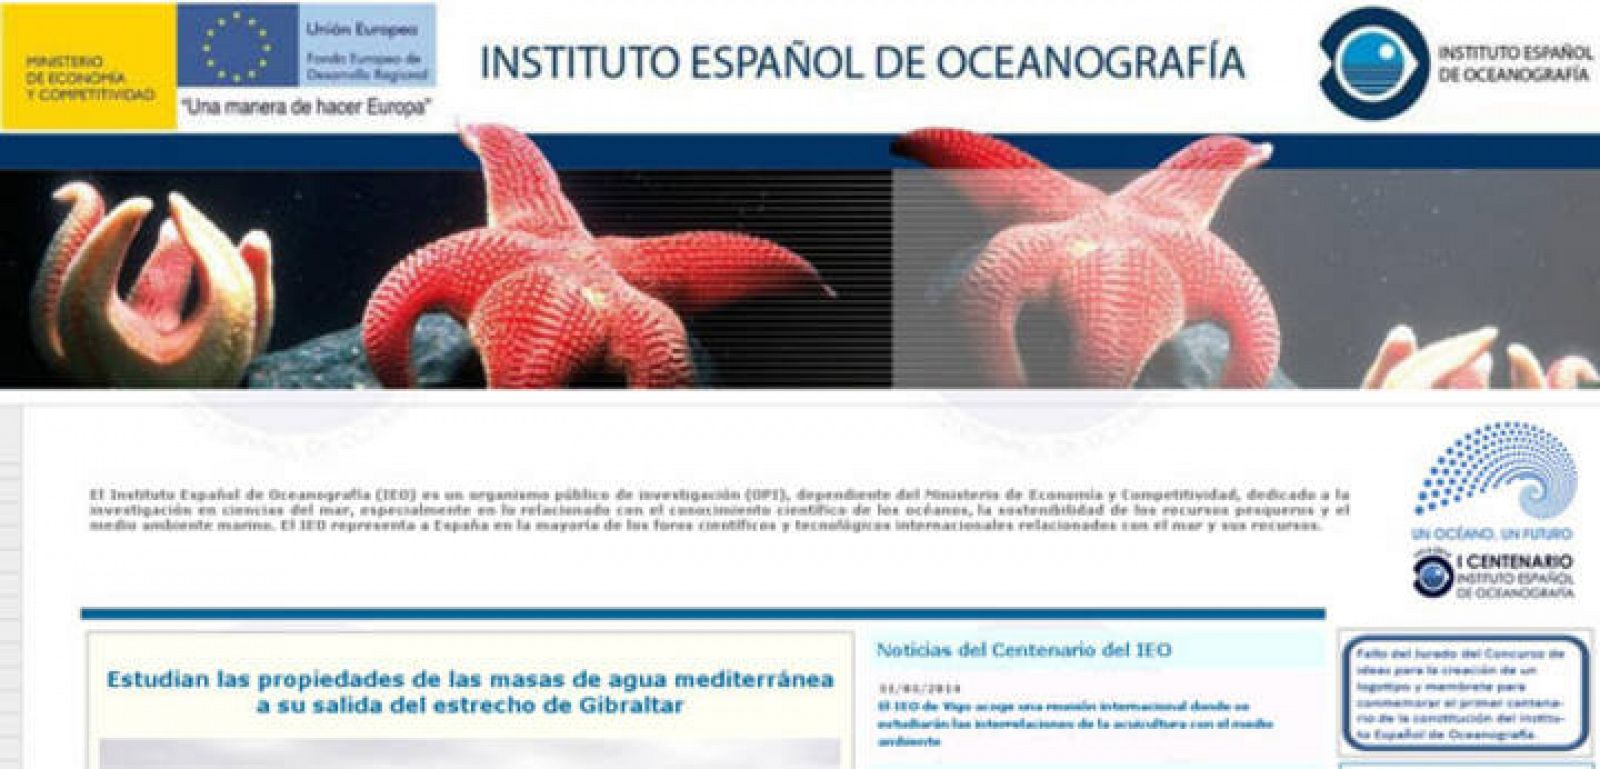 Los investigadores del Instituo Español de Oceanografía se encuentran entre los afectados por la bajada salarial que denuncia el CSIF.